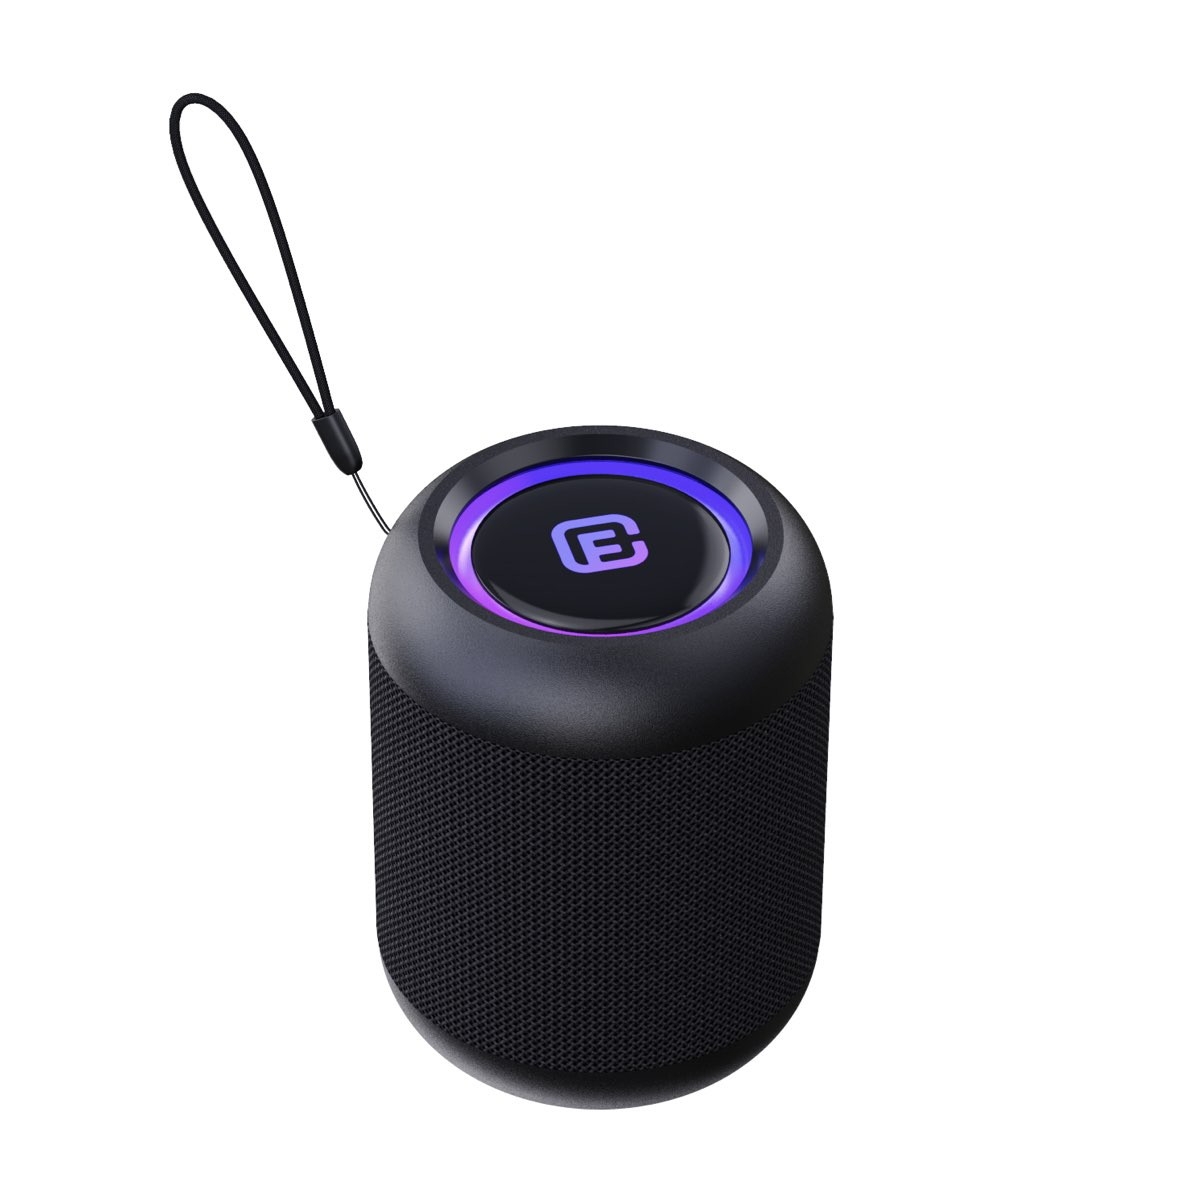 コンパクト 防水防塵対応 Bluetoothスピーカー | Giftpad egift